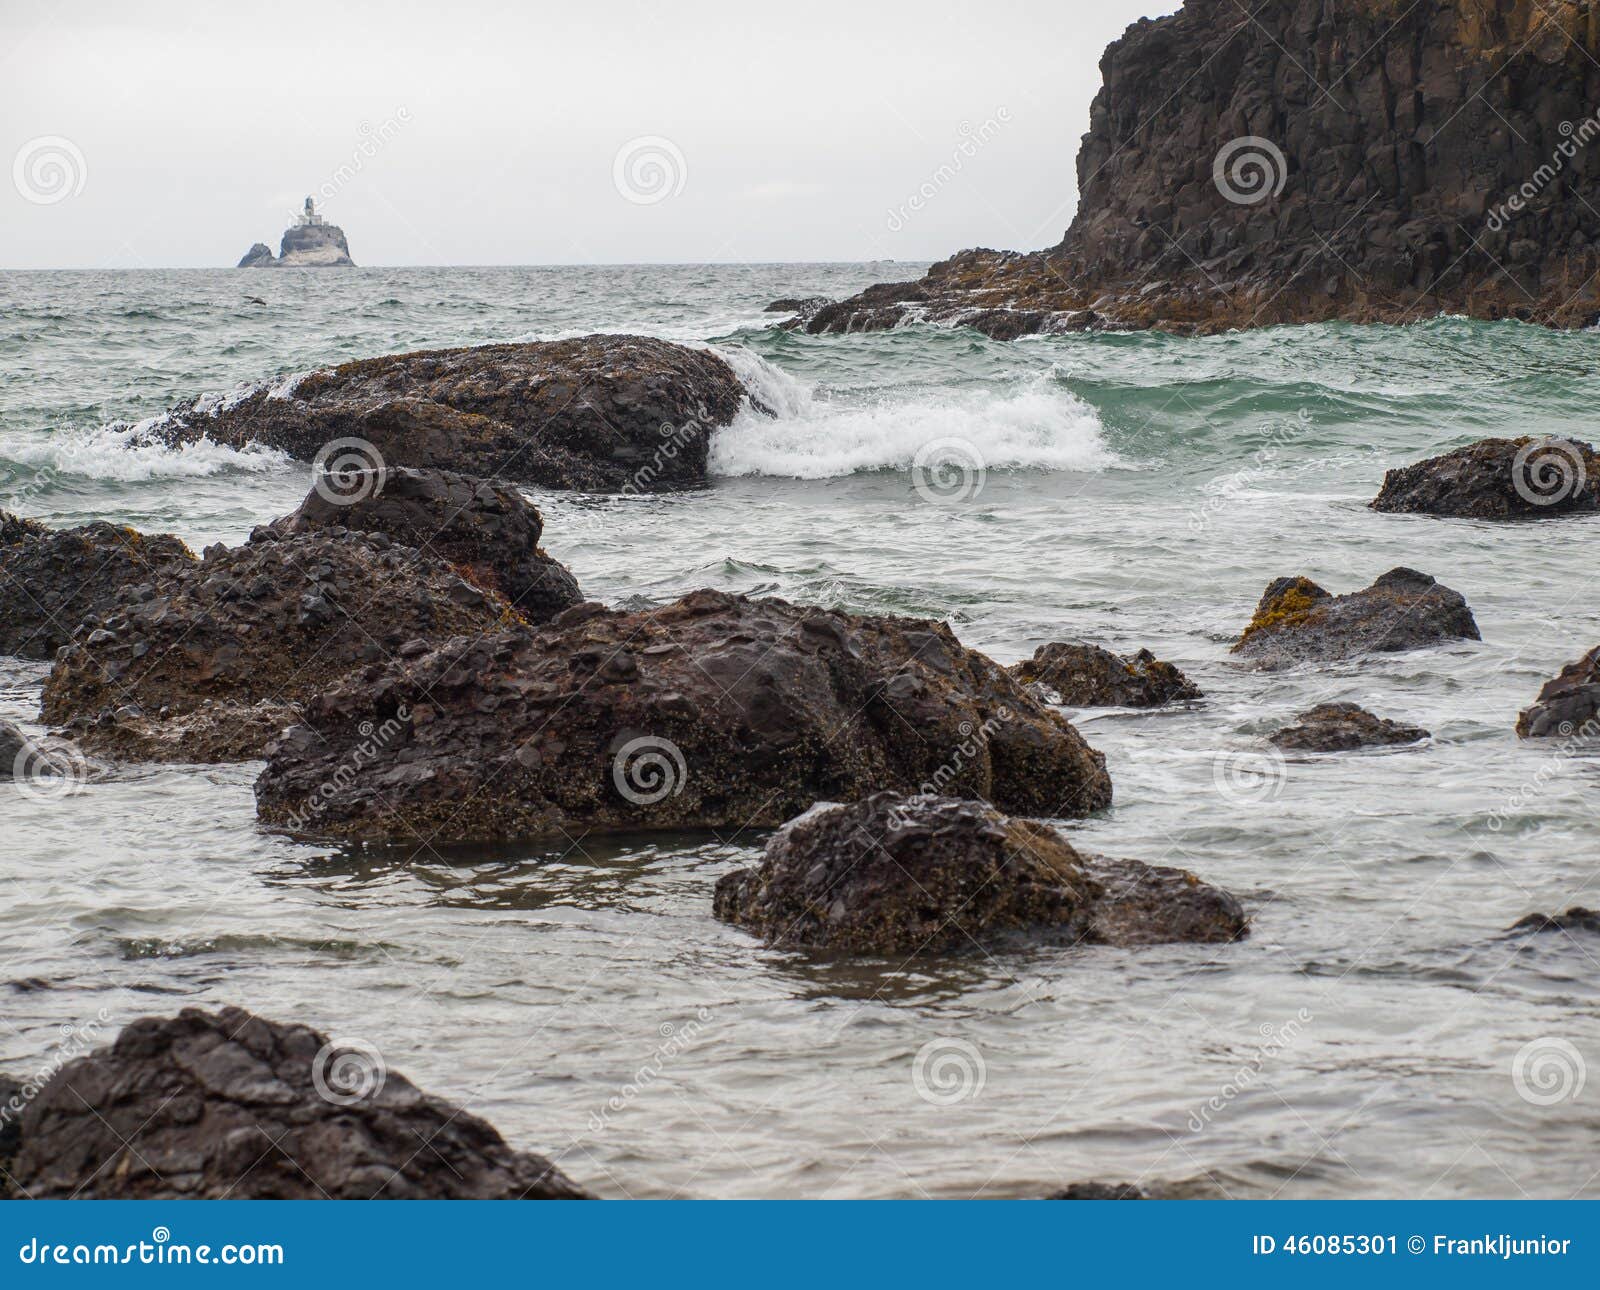 waves crashing on rocks with tillamook lighthouse